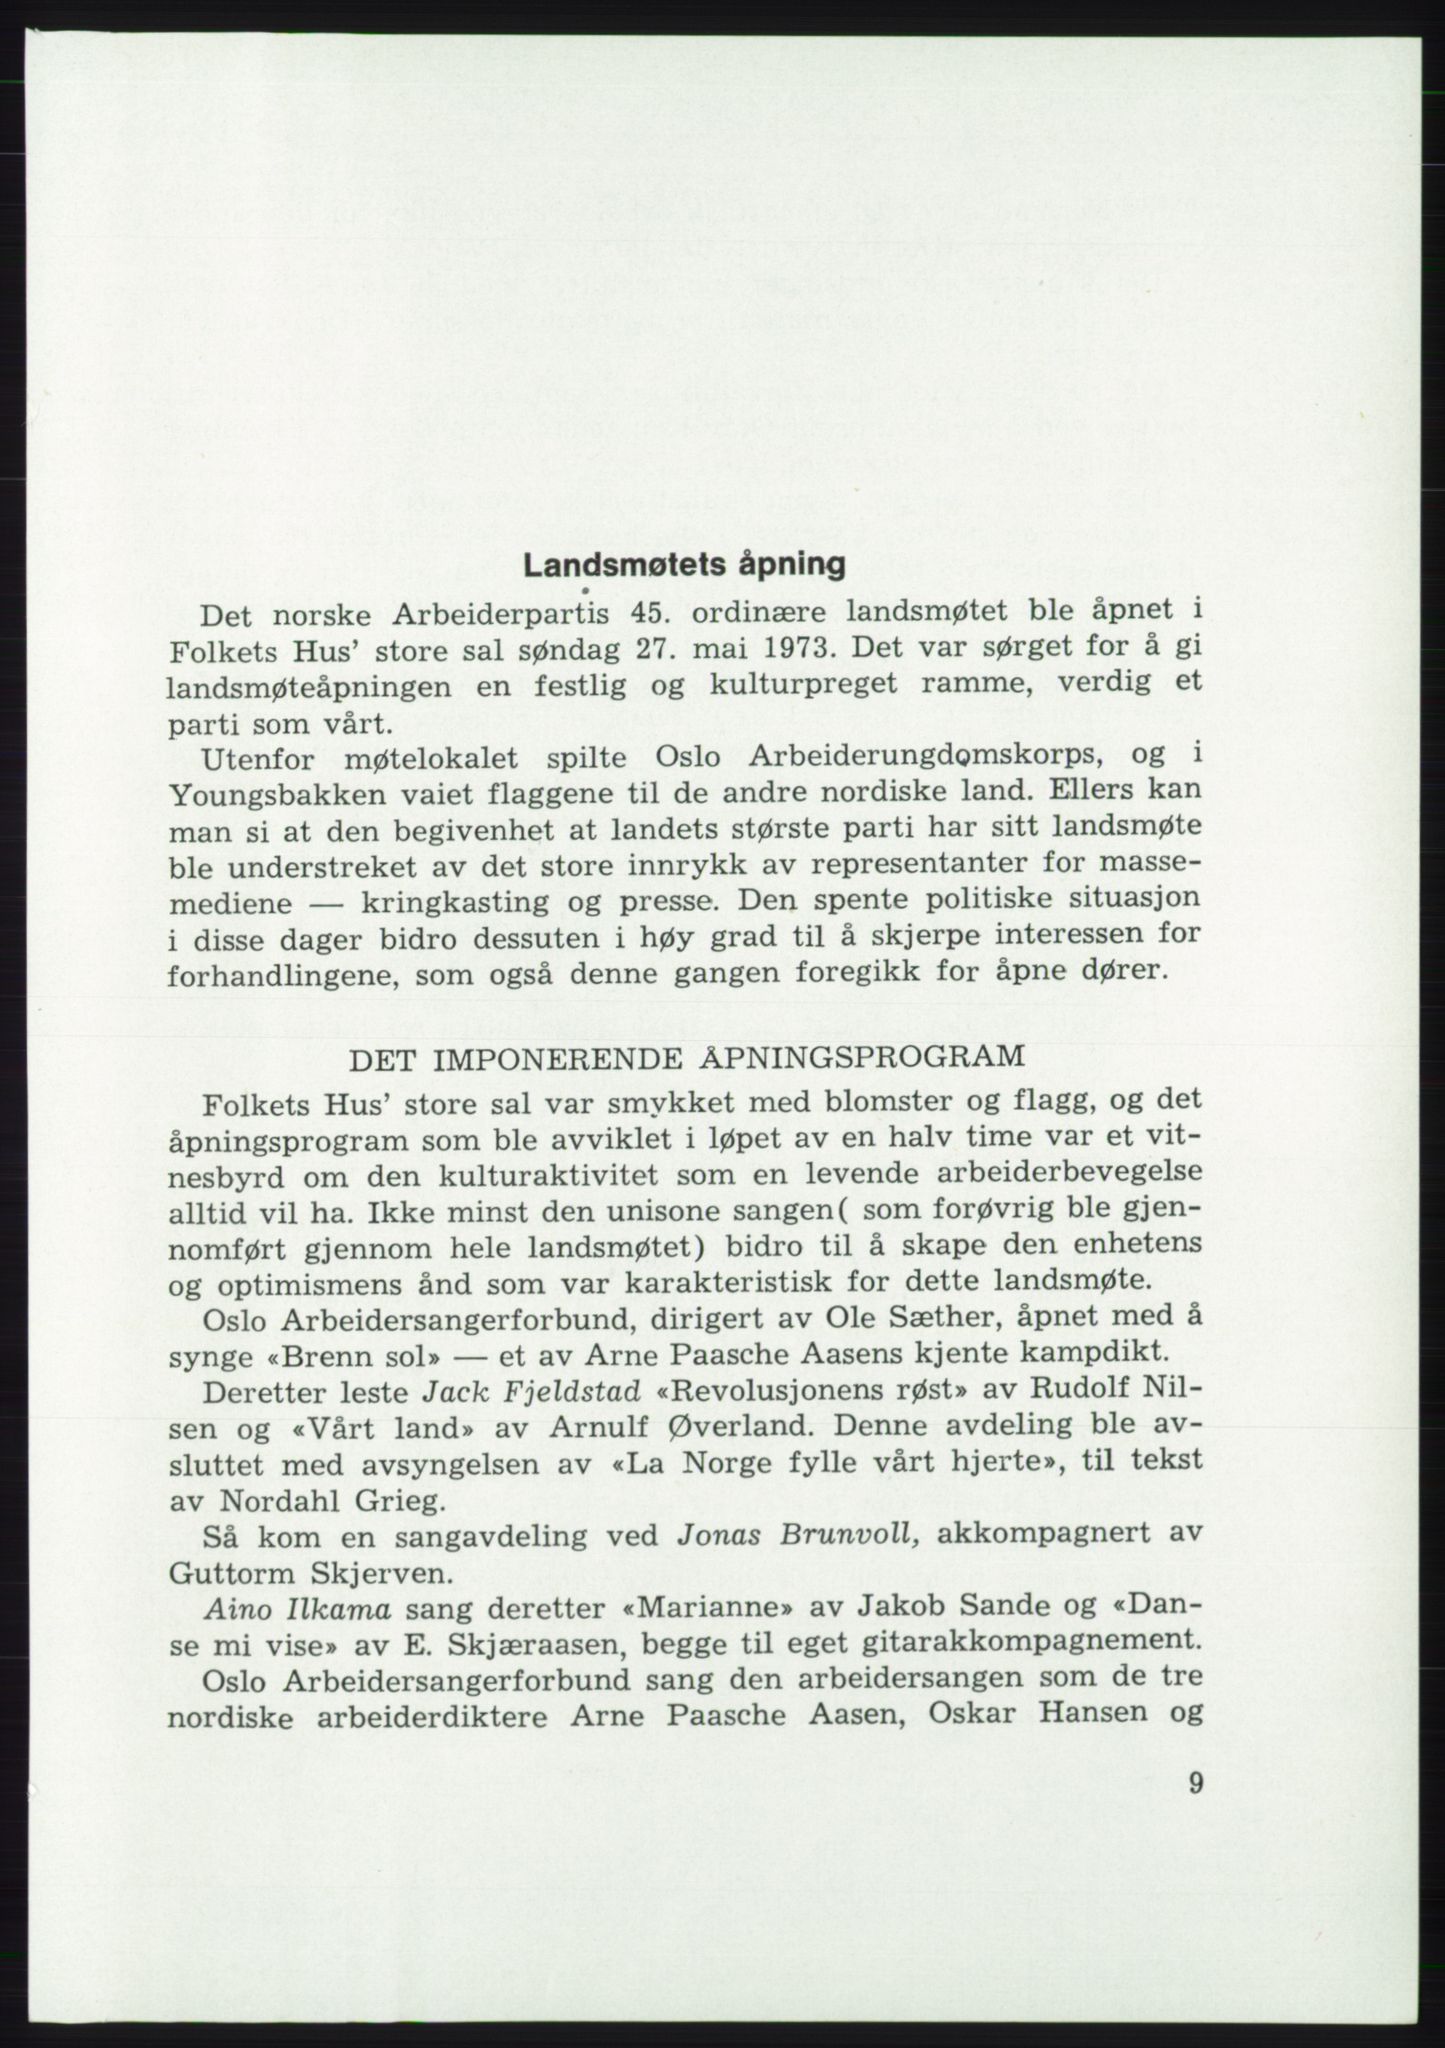 Det norske Arbeiderparti - publikasjoner, AAB/-/-/-: Protokoll over forhandlingene på det 45. ordinære landsmøte 27.-30. mai 1973 i Oslo, 1973, p. 9